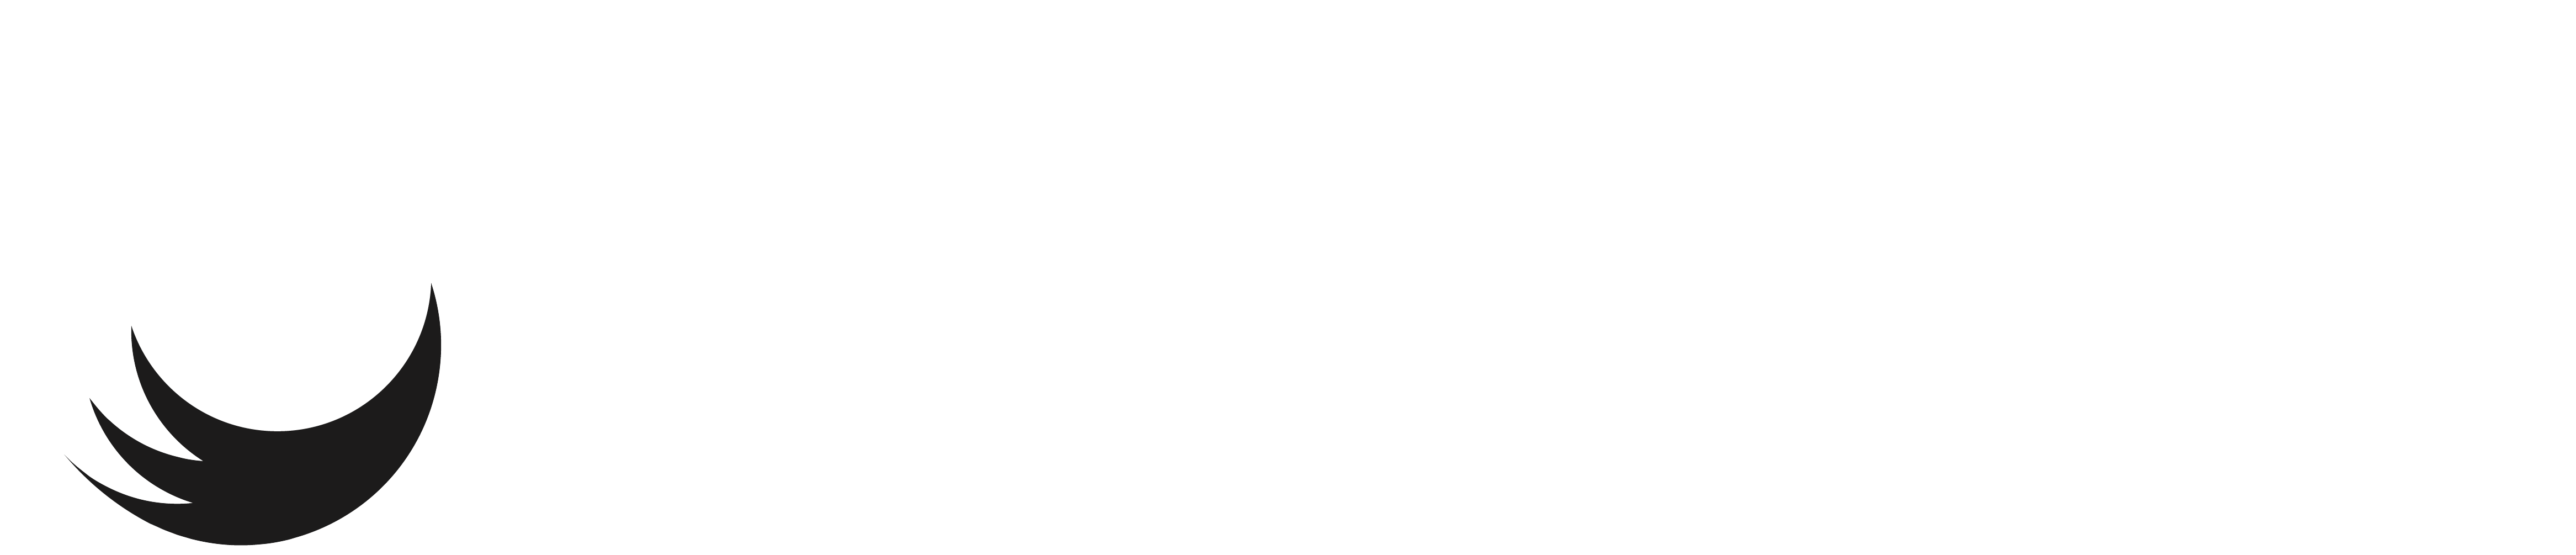 render in India logo